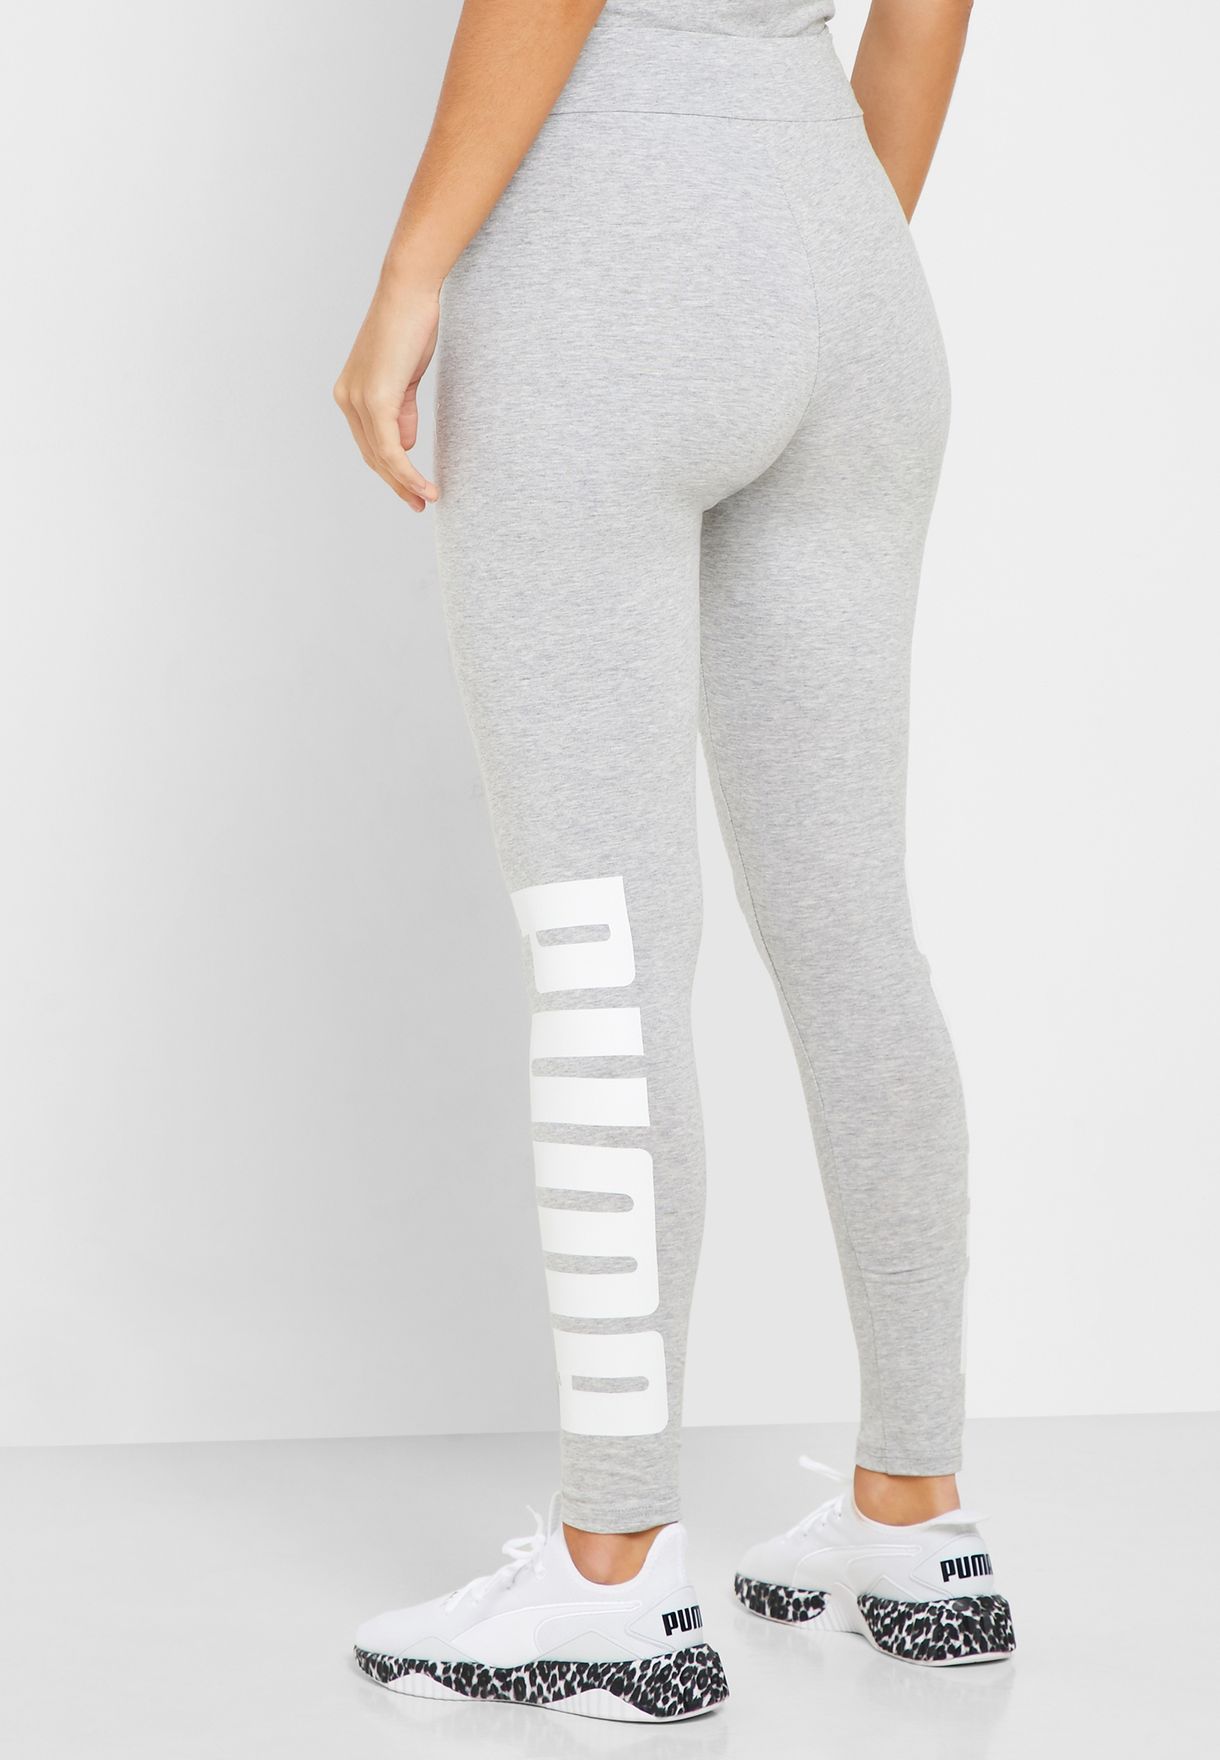 grey puma tights